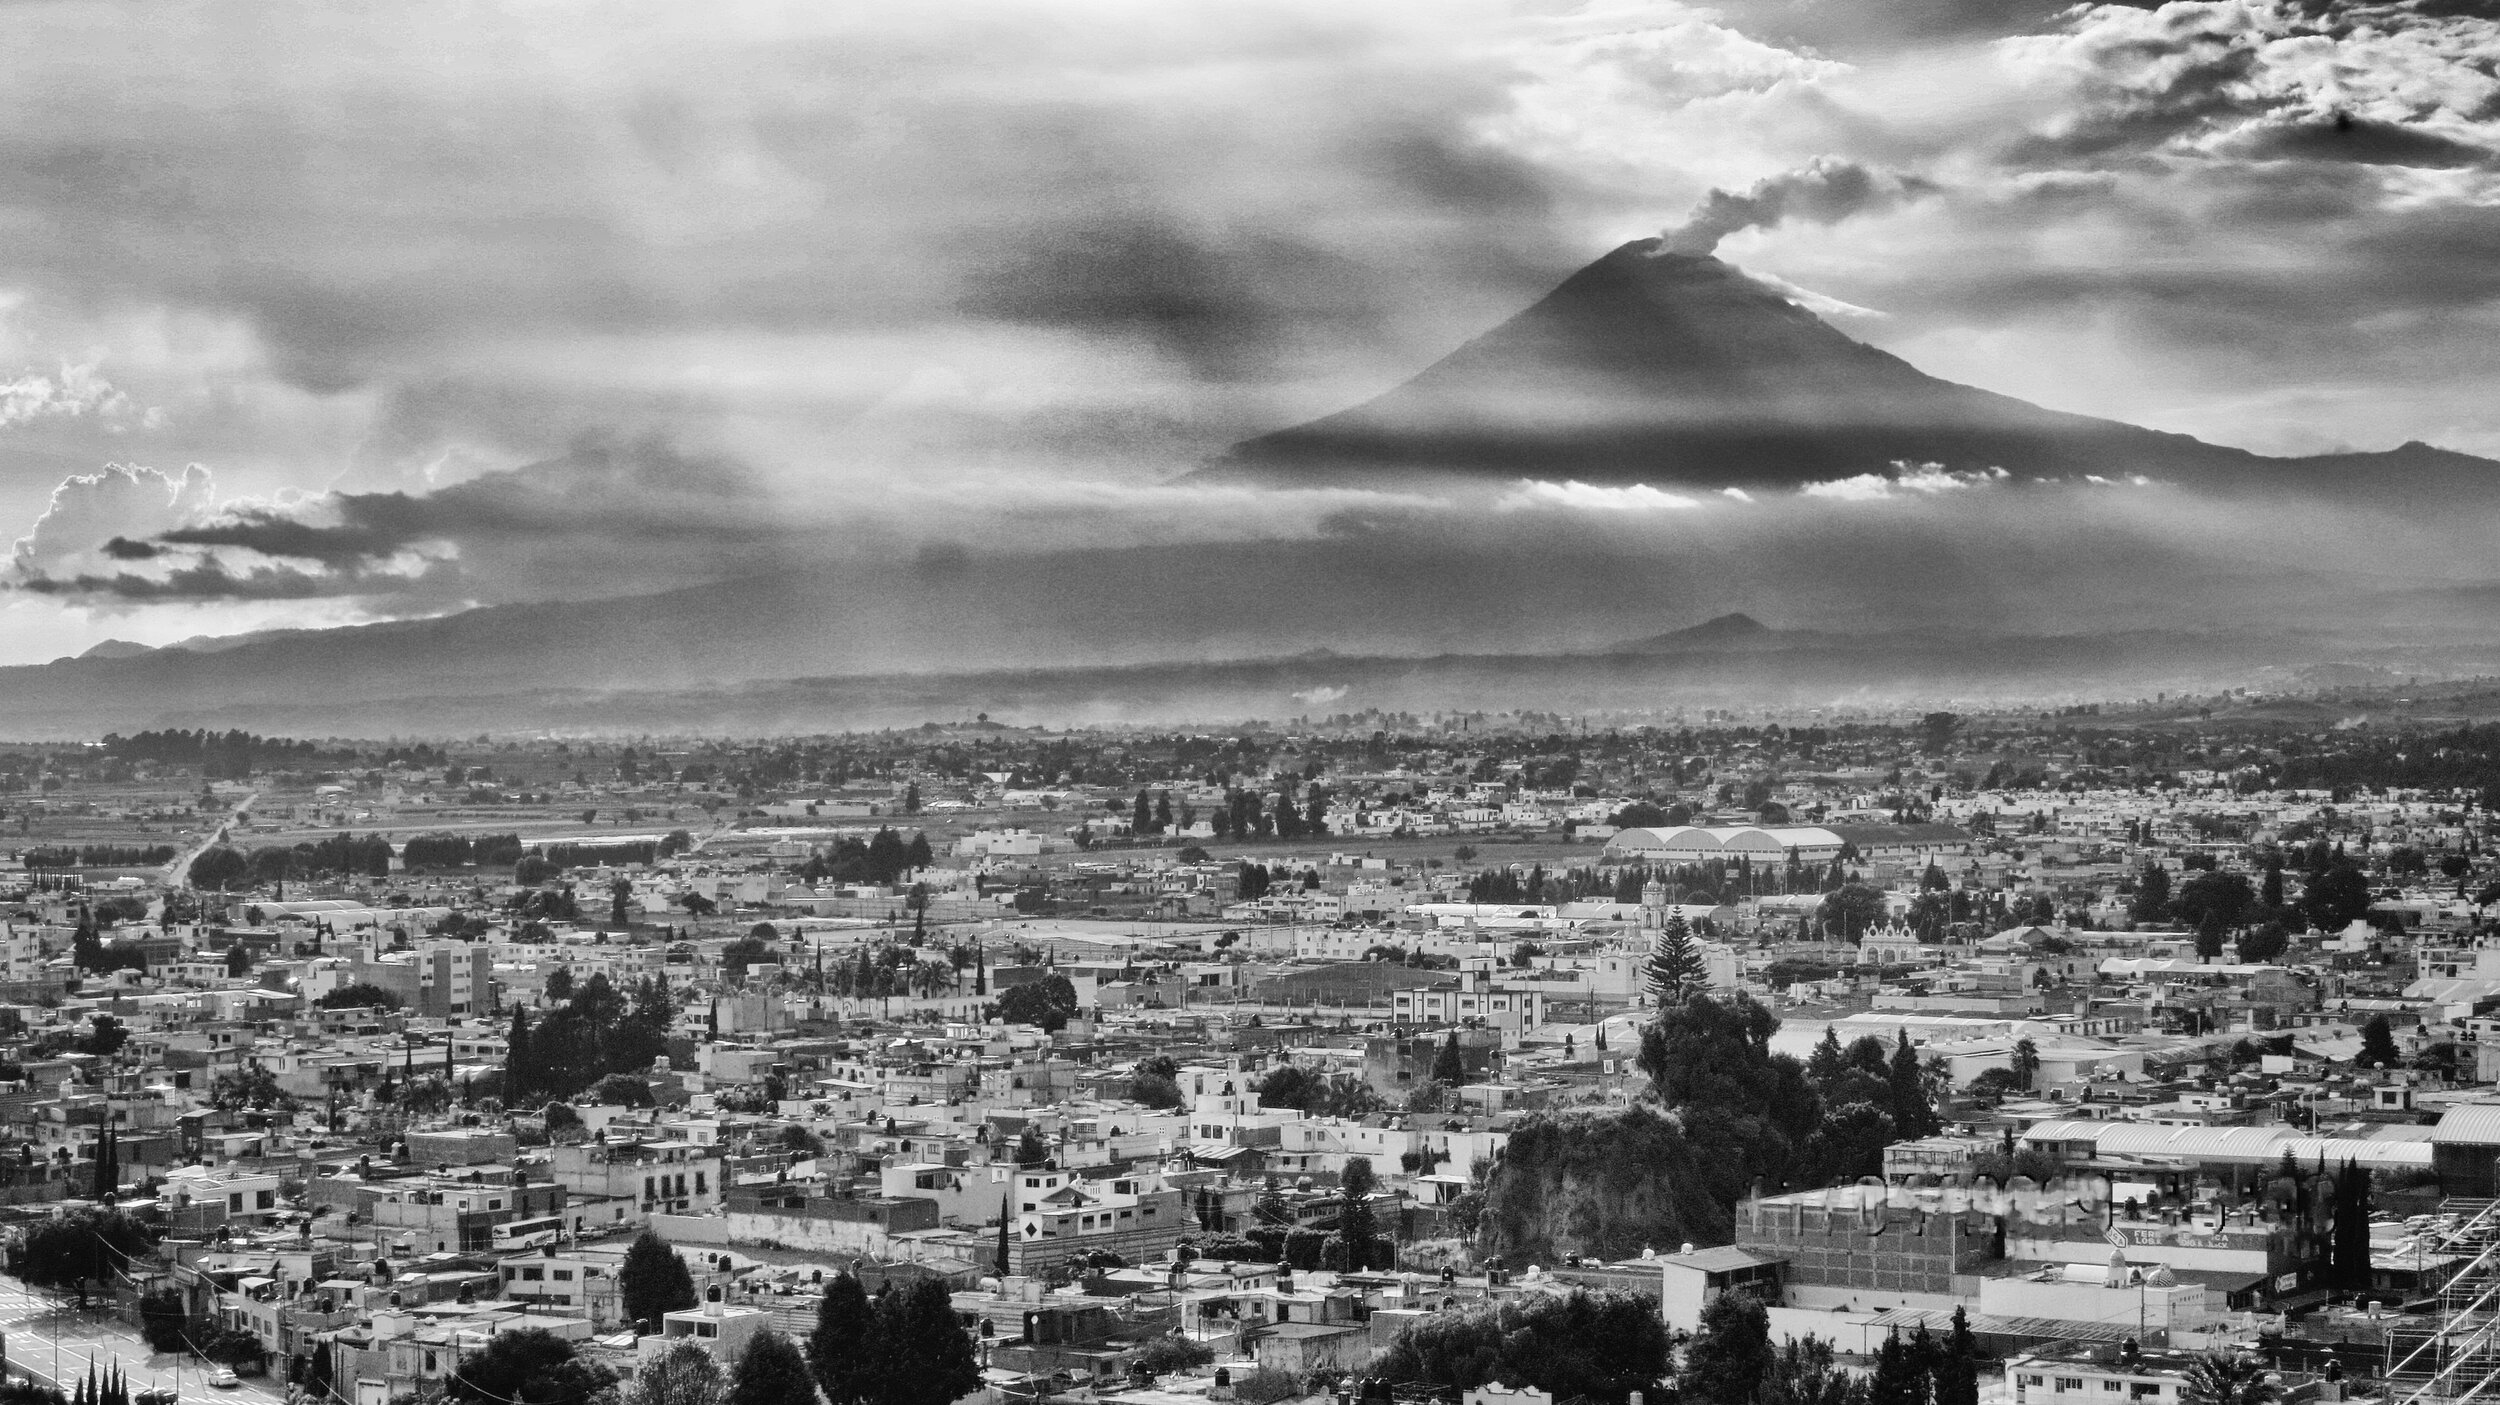  Volcán Popocatépetl, from Cholula. 